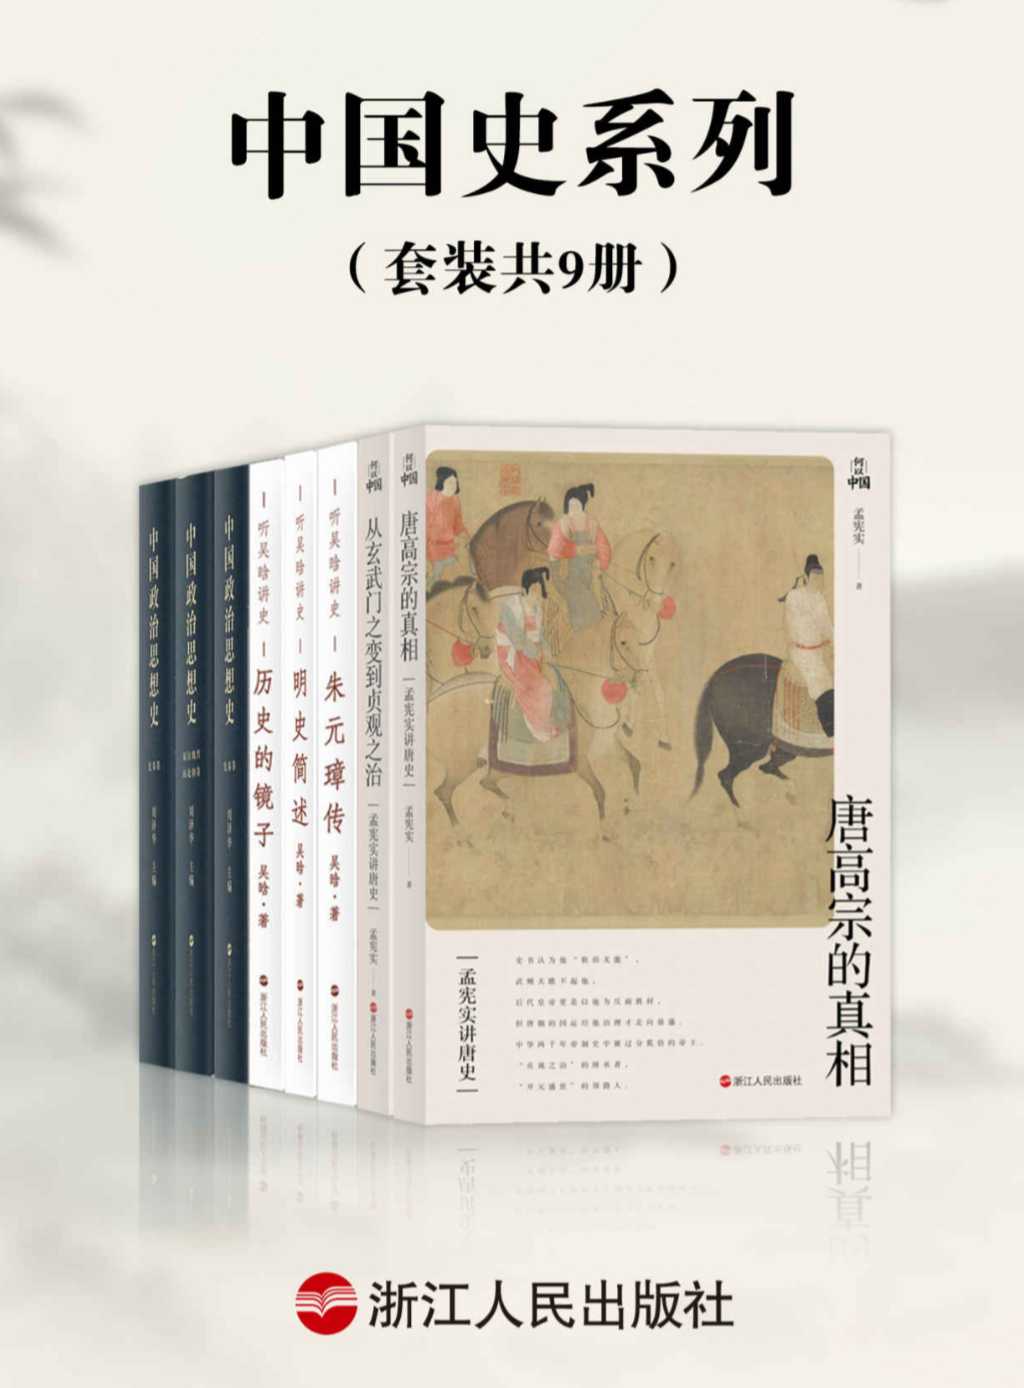 📕📕《中国史系列》📕📕（共9册）  [azw3.epub.mobi格式]